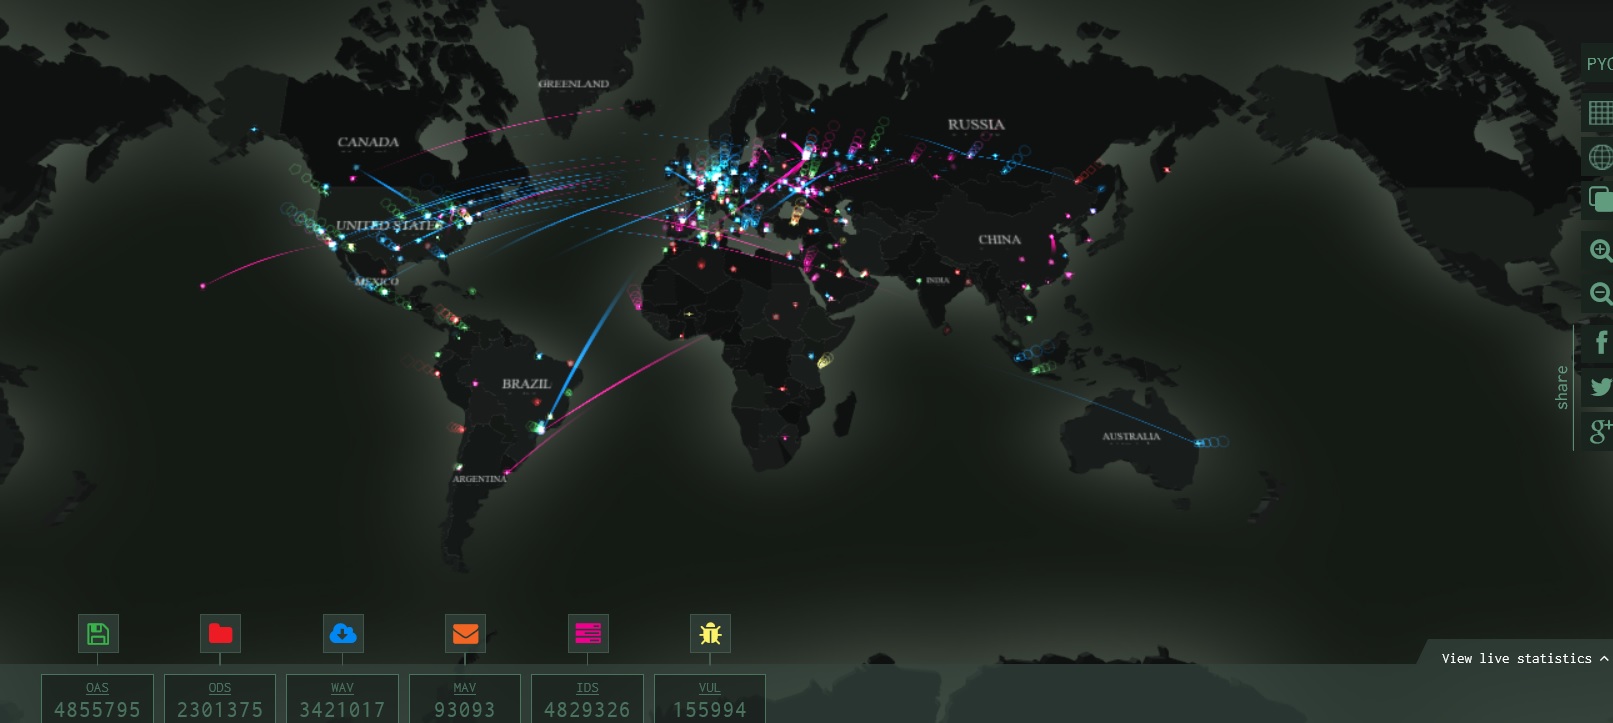 Kaspersky Lab ha plasmado en un interesante mapa interactivo en el cual podemos ver, en tiempo real, las amenazas cibernéticas a las que se enfrentan países de todo el mundo, una verdadera ciberguerra mundial.